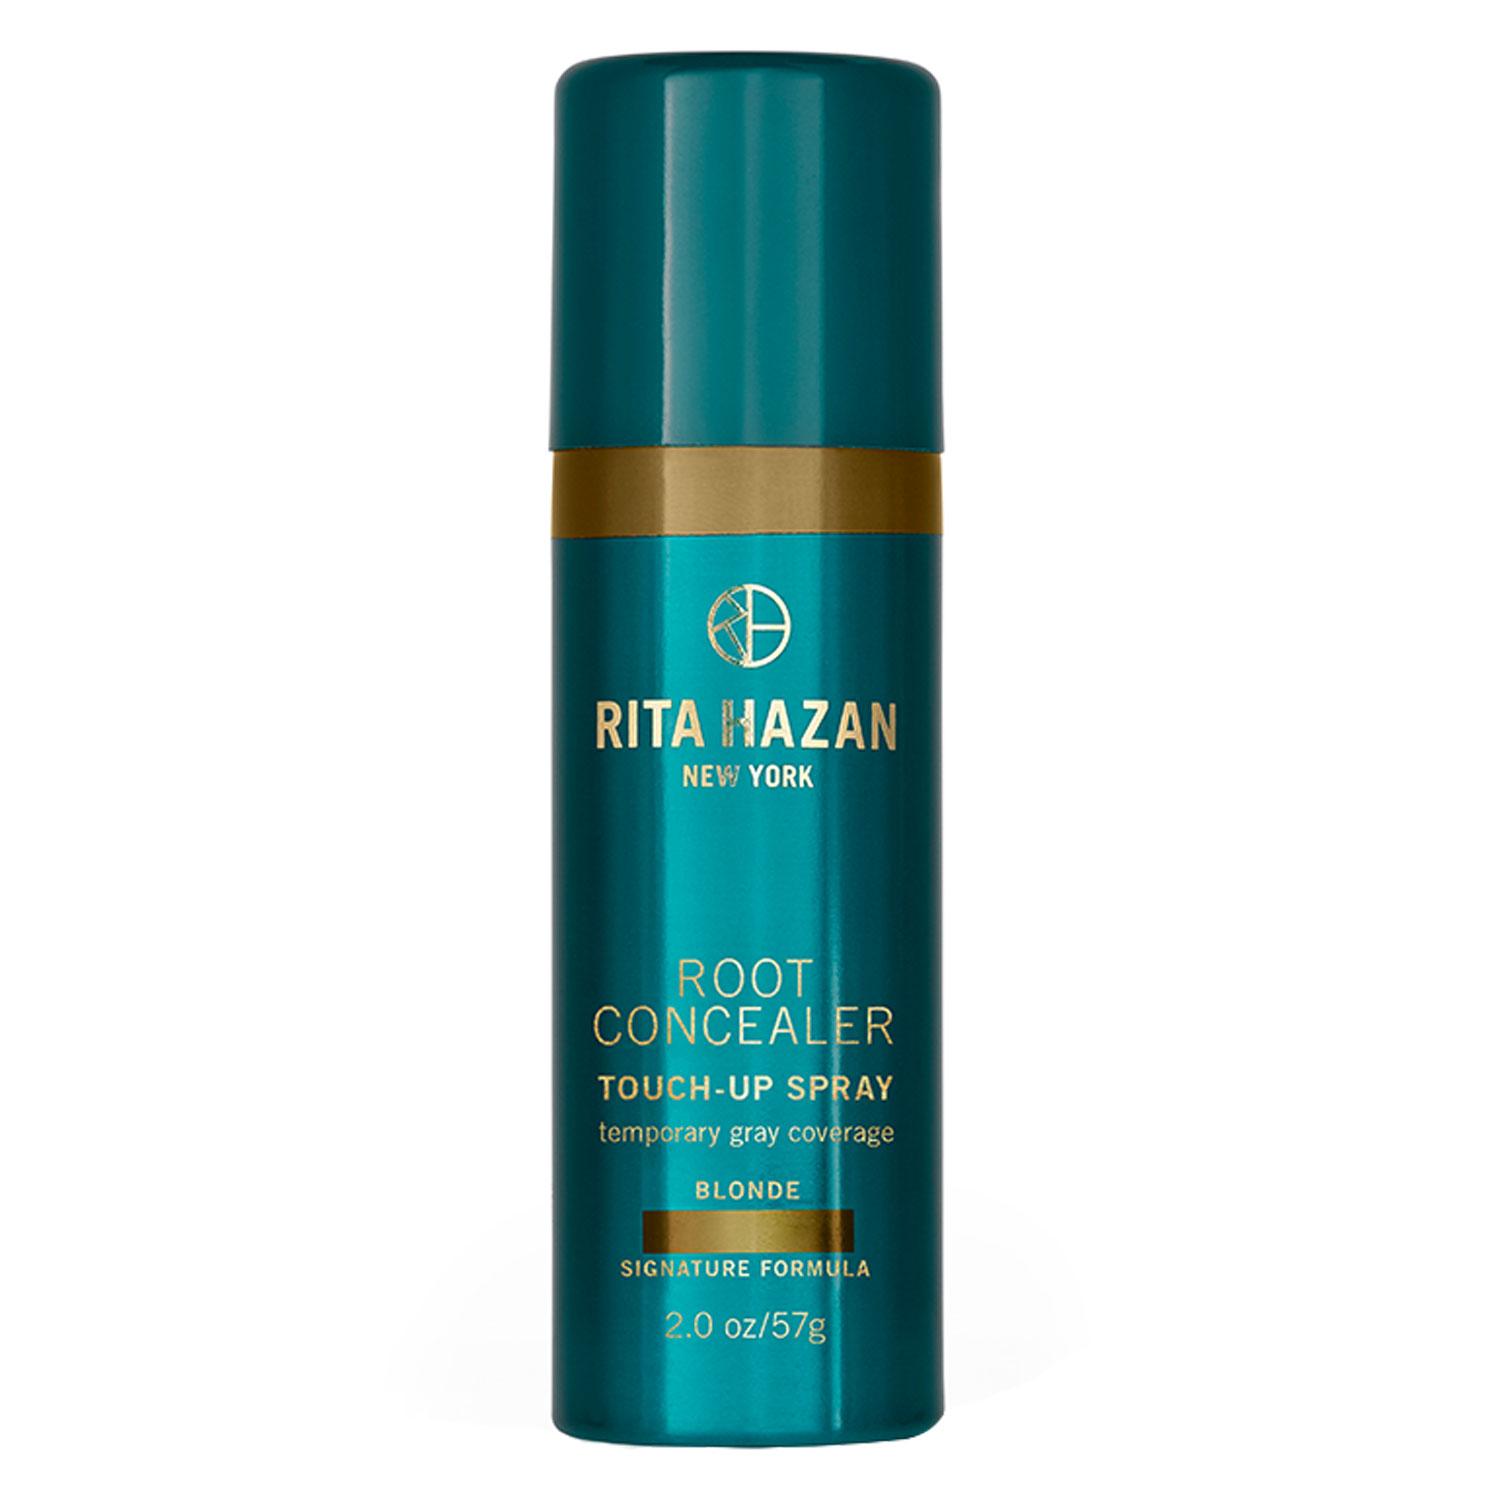 Rita Hazan New York - Root Concealer Touch-Up Spray Blonde